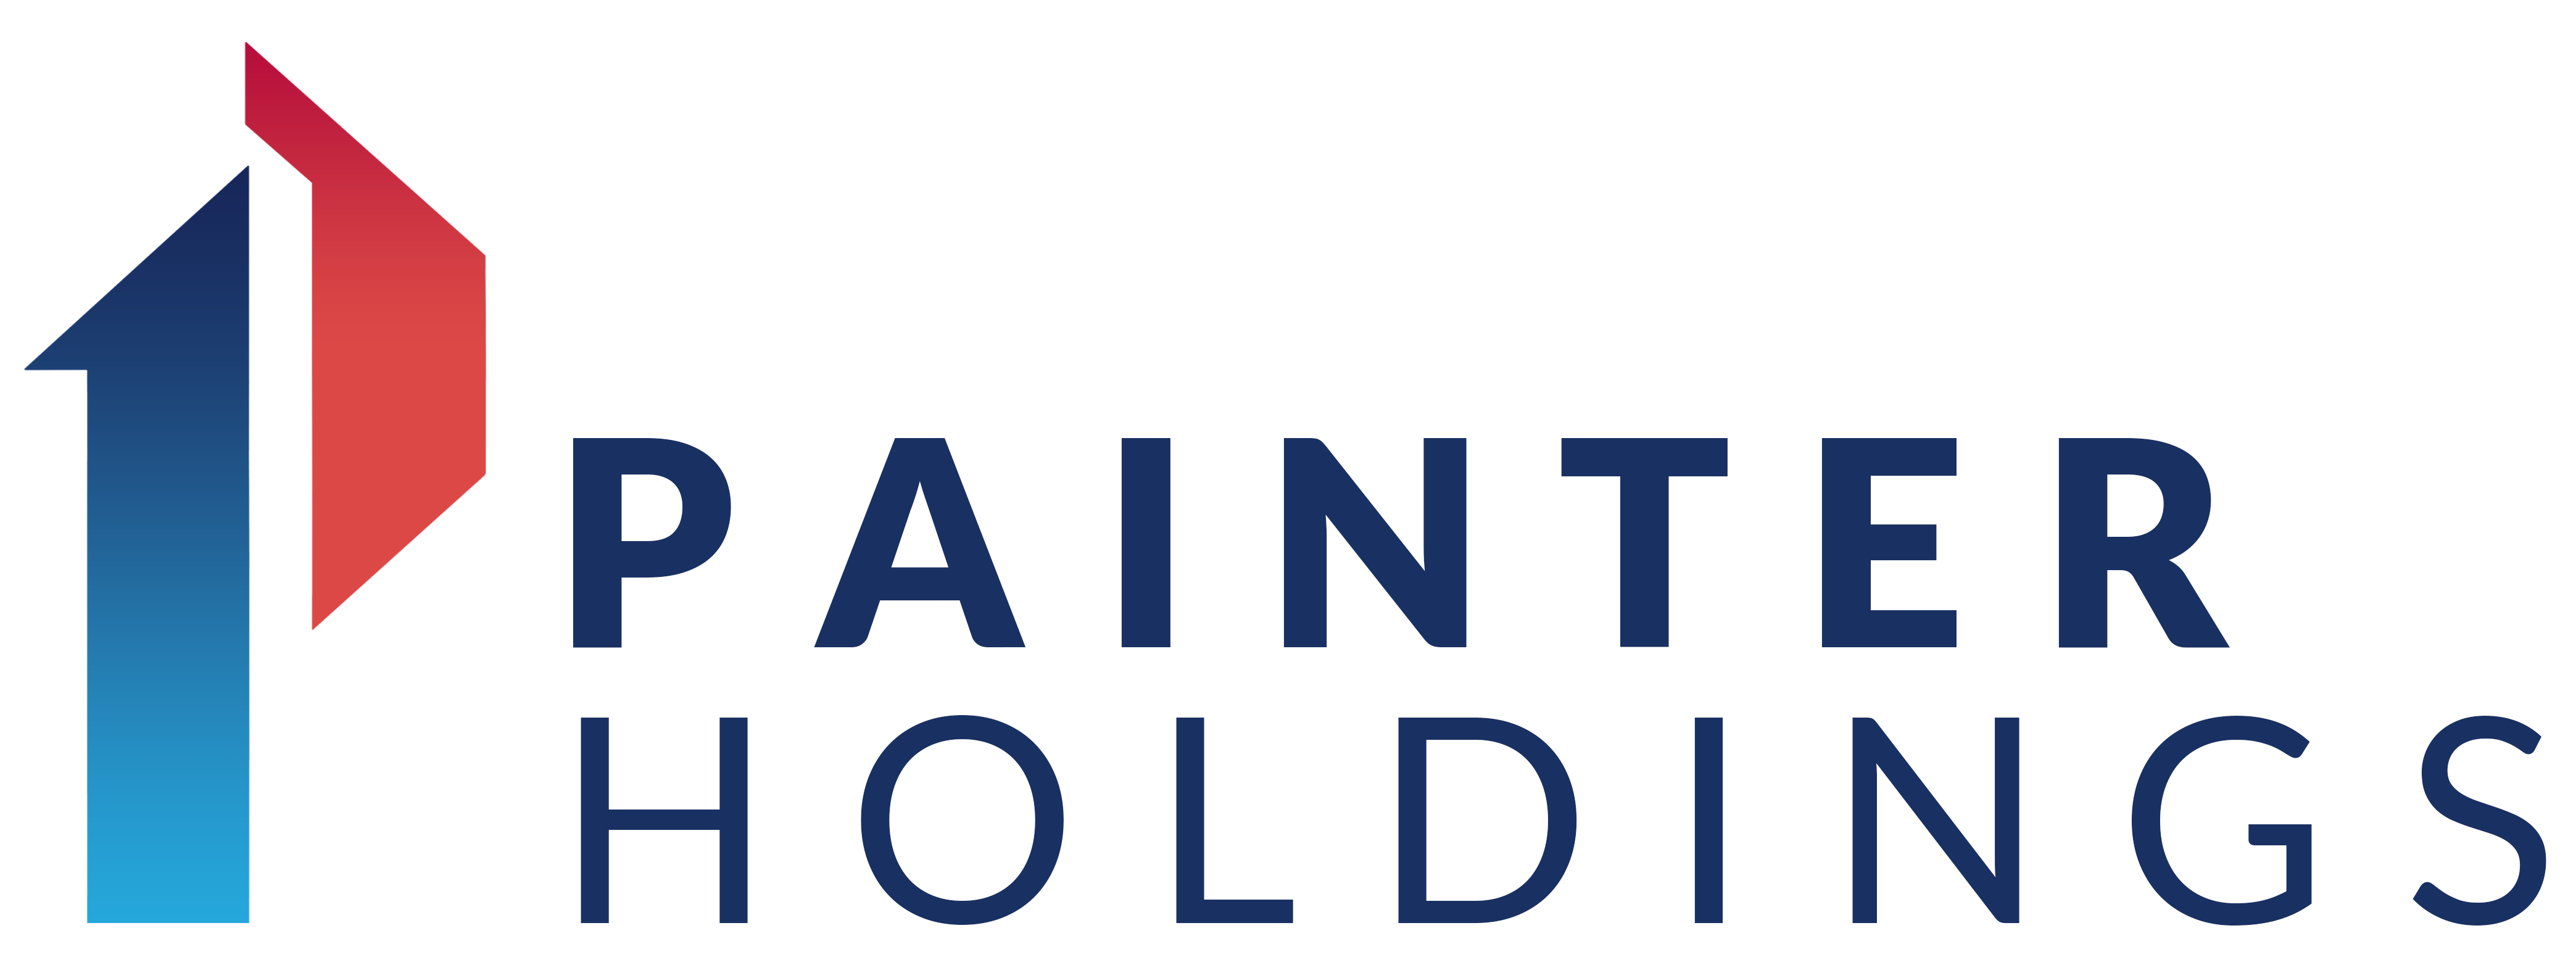 Painter Holdings LLC 